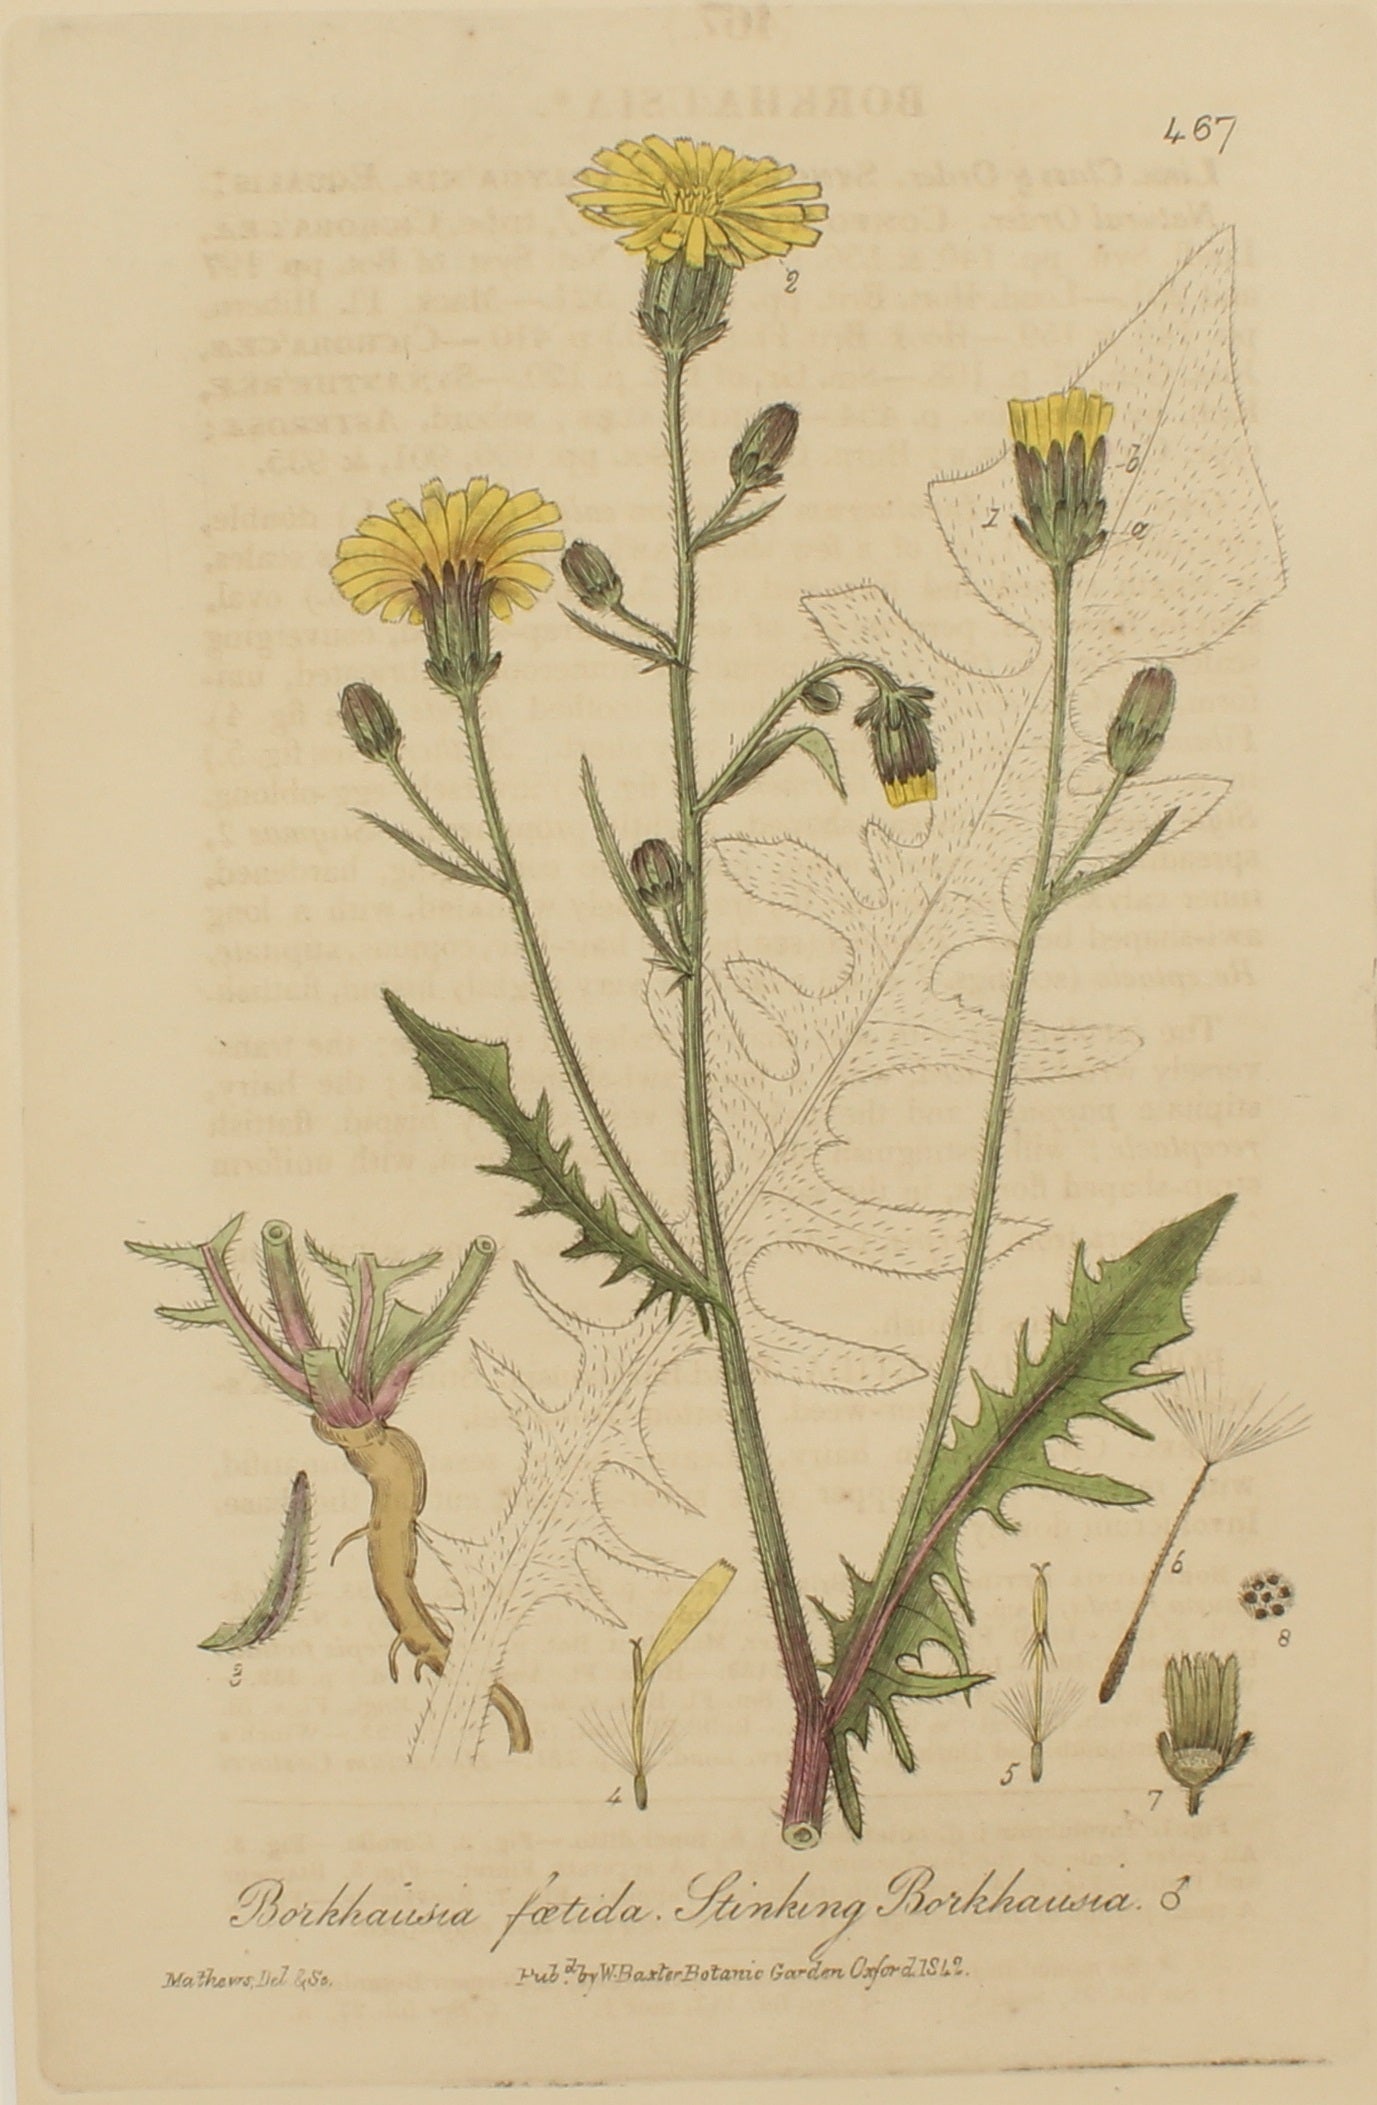 Botanical, Baxter William, Stinking Borkhausia, 1840-1843